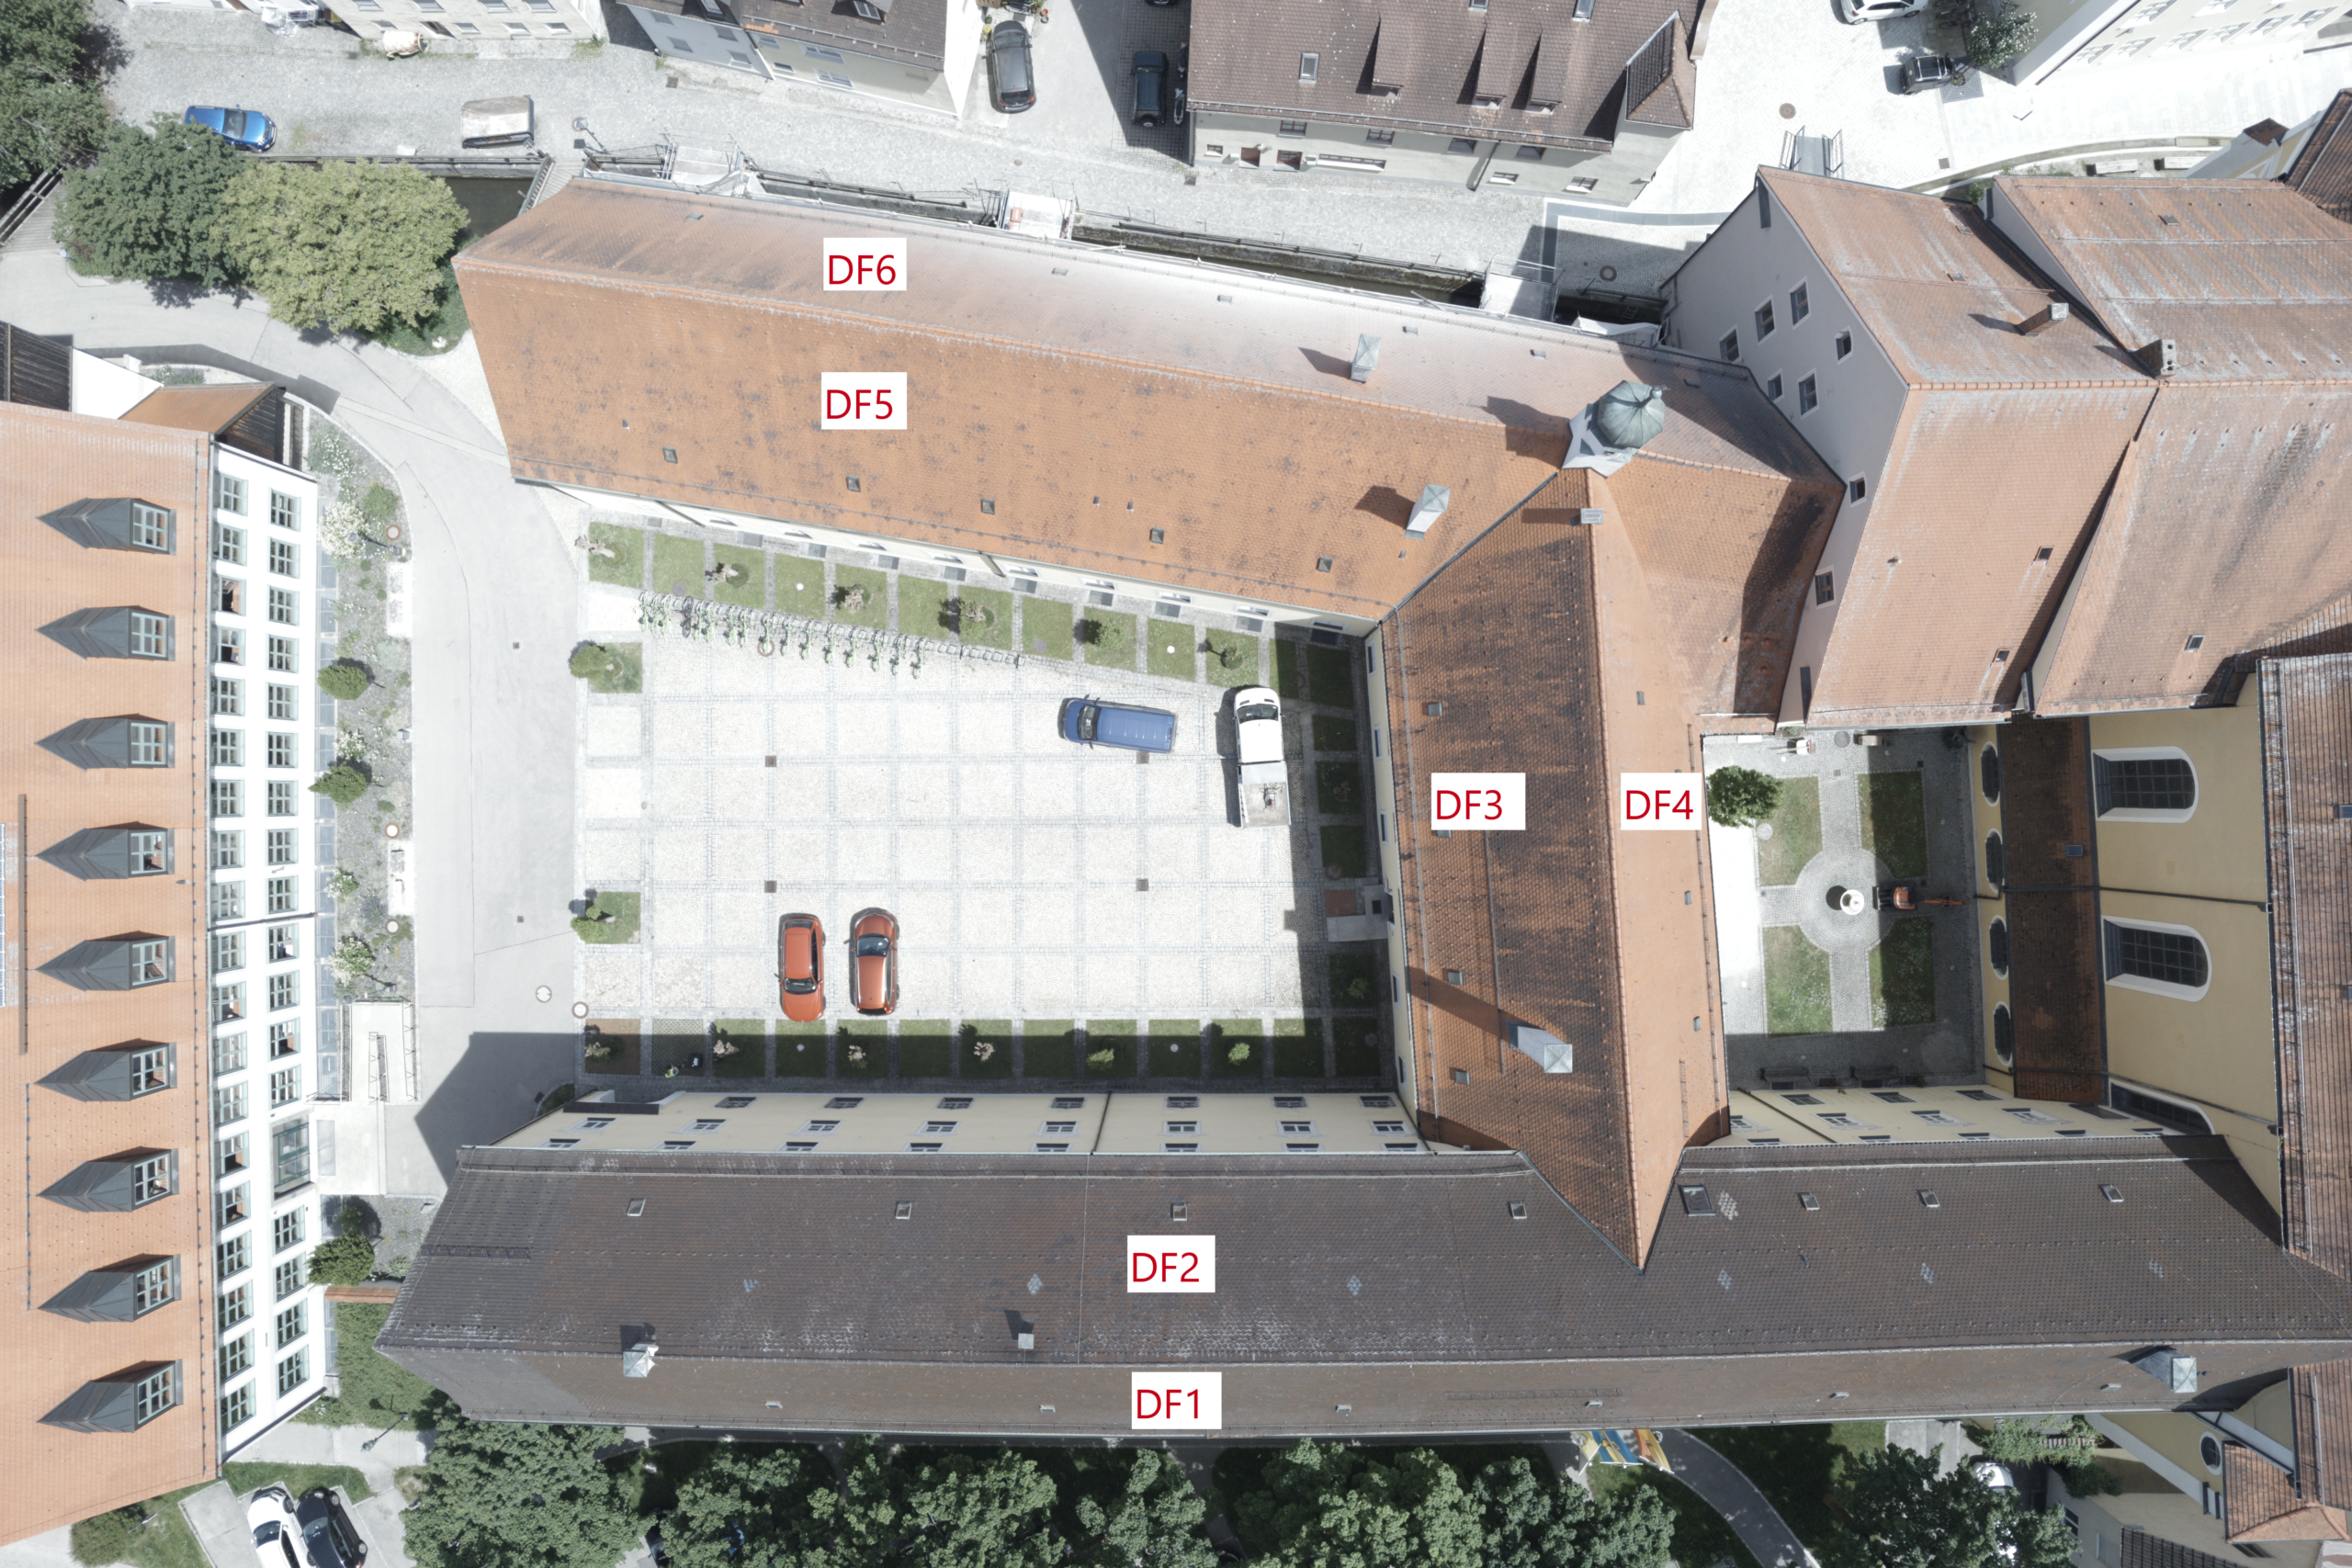 Luftbildaufnahme eines Gebäudes zur Inspektion der Dachfläche